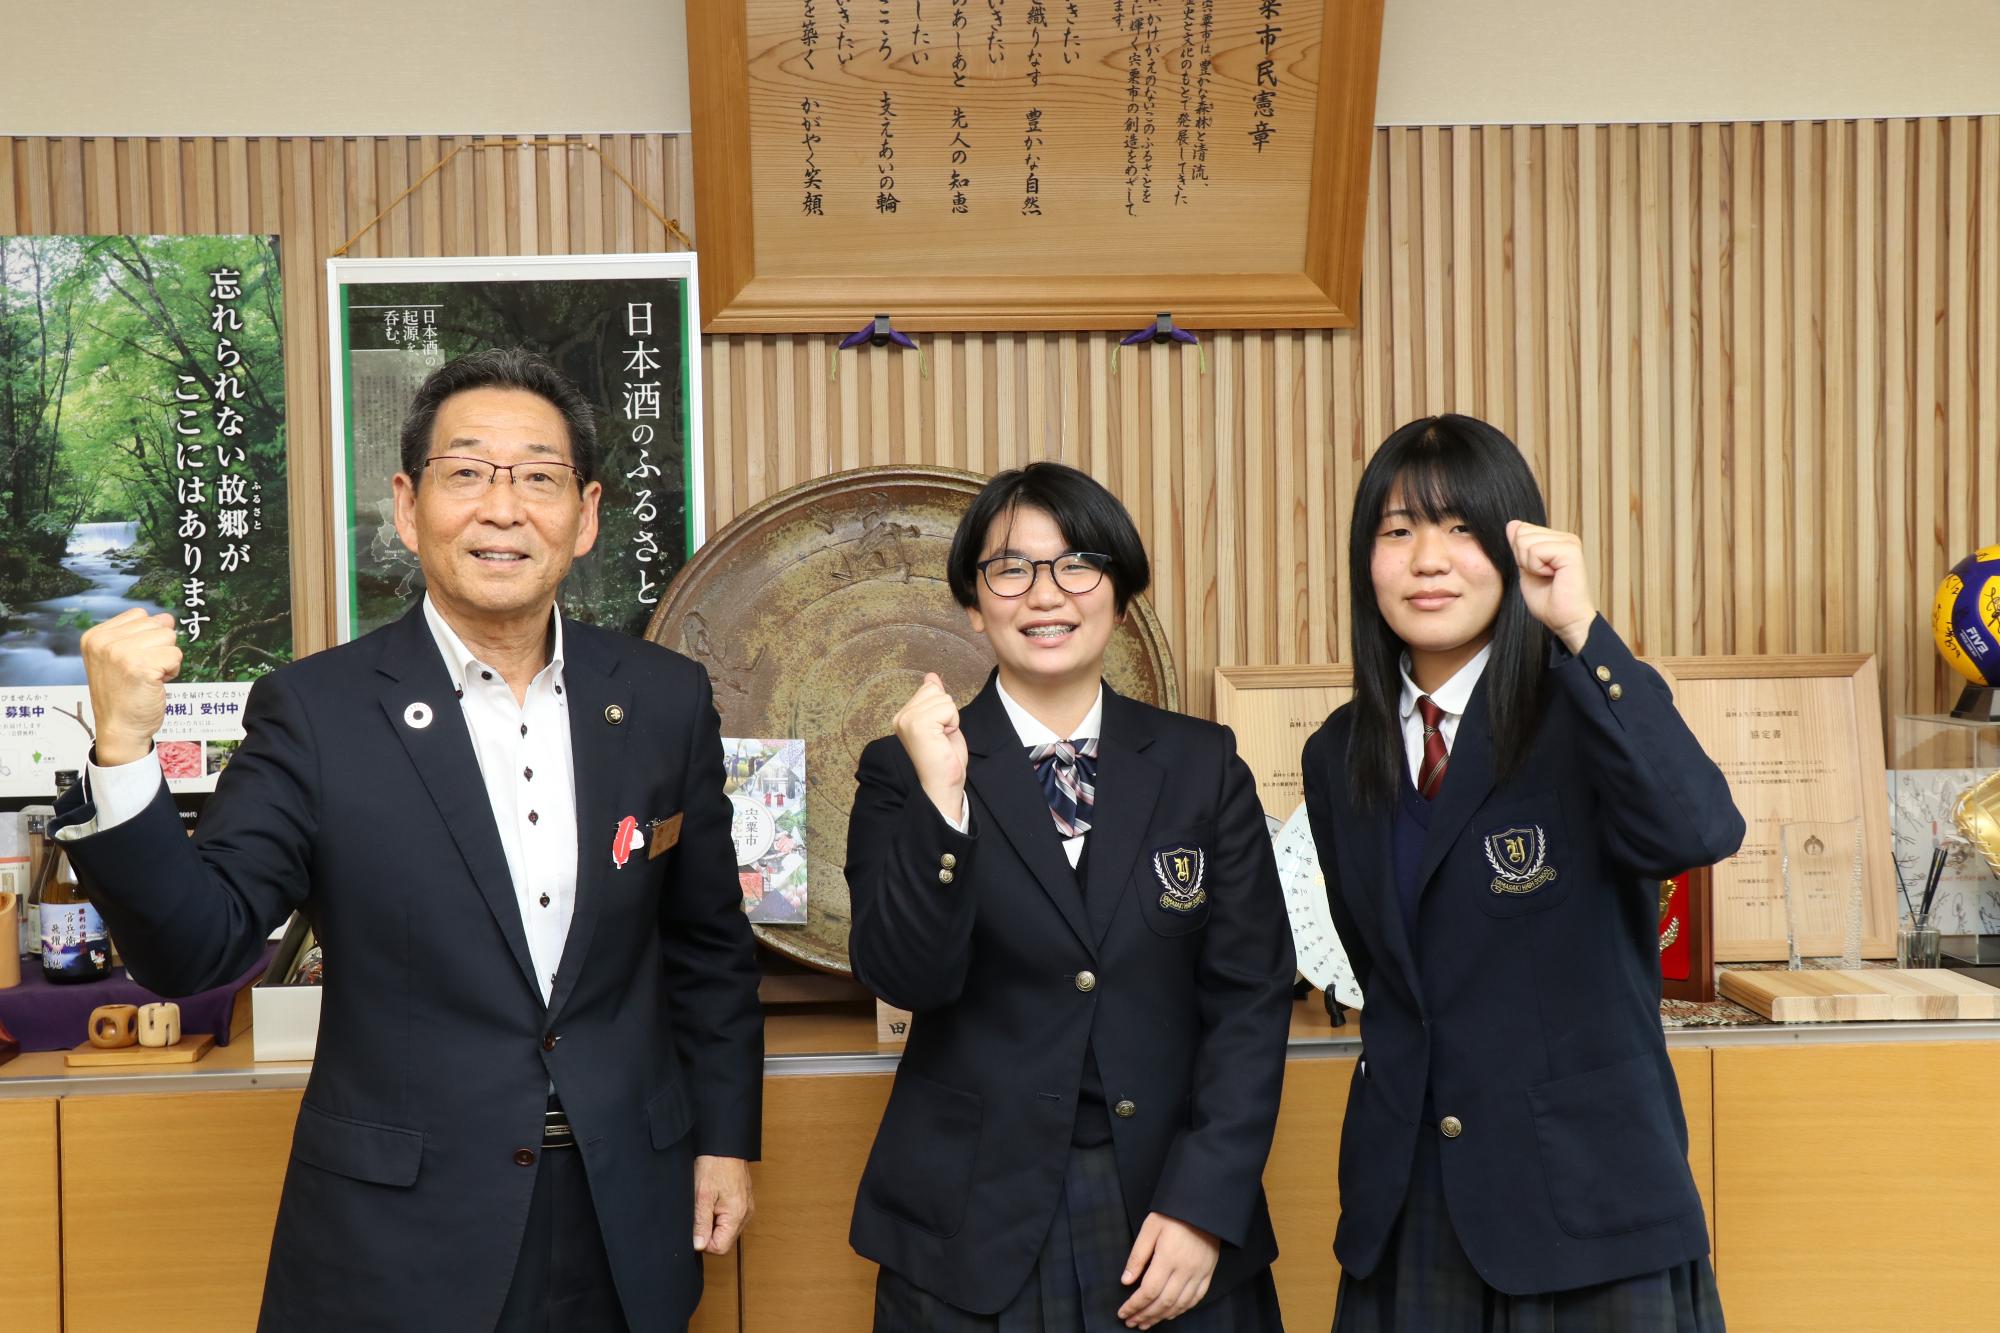 福元市長と日本農業クラブ全国大会に出場される山崎高校の金持さんと秦さんの写真